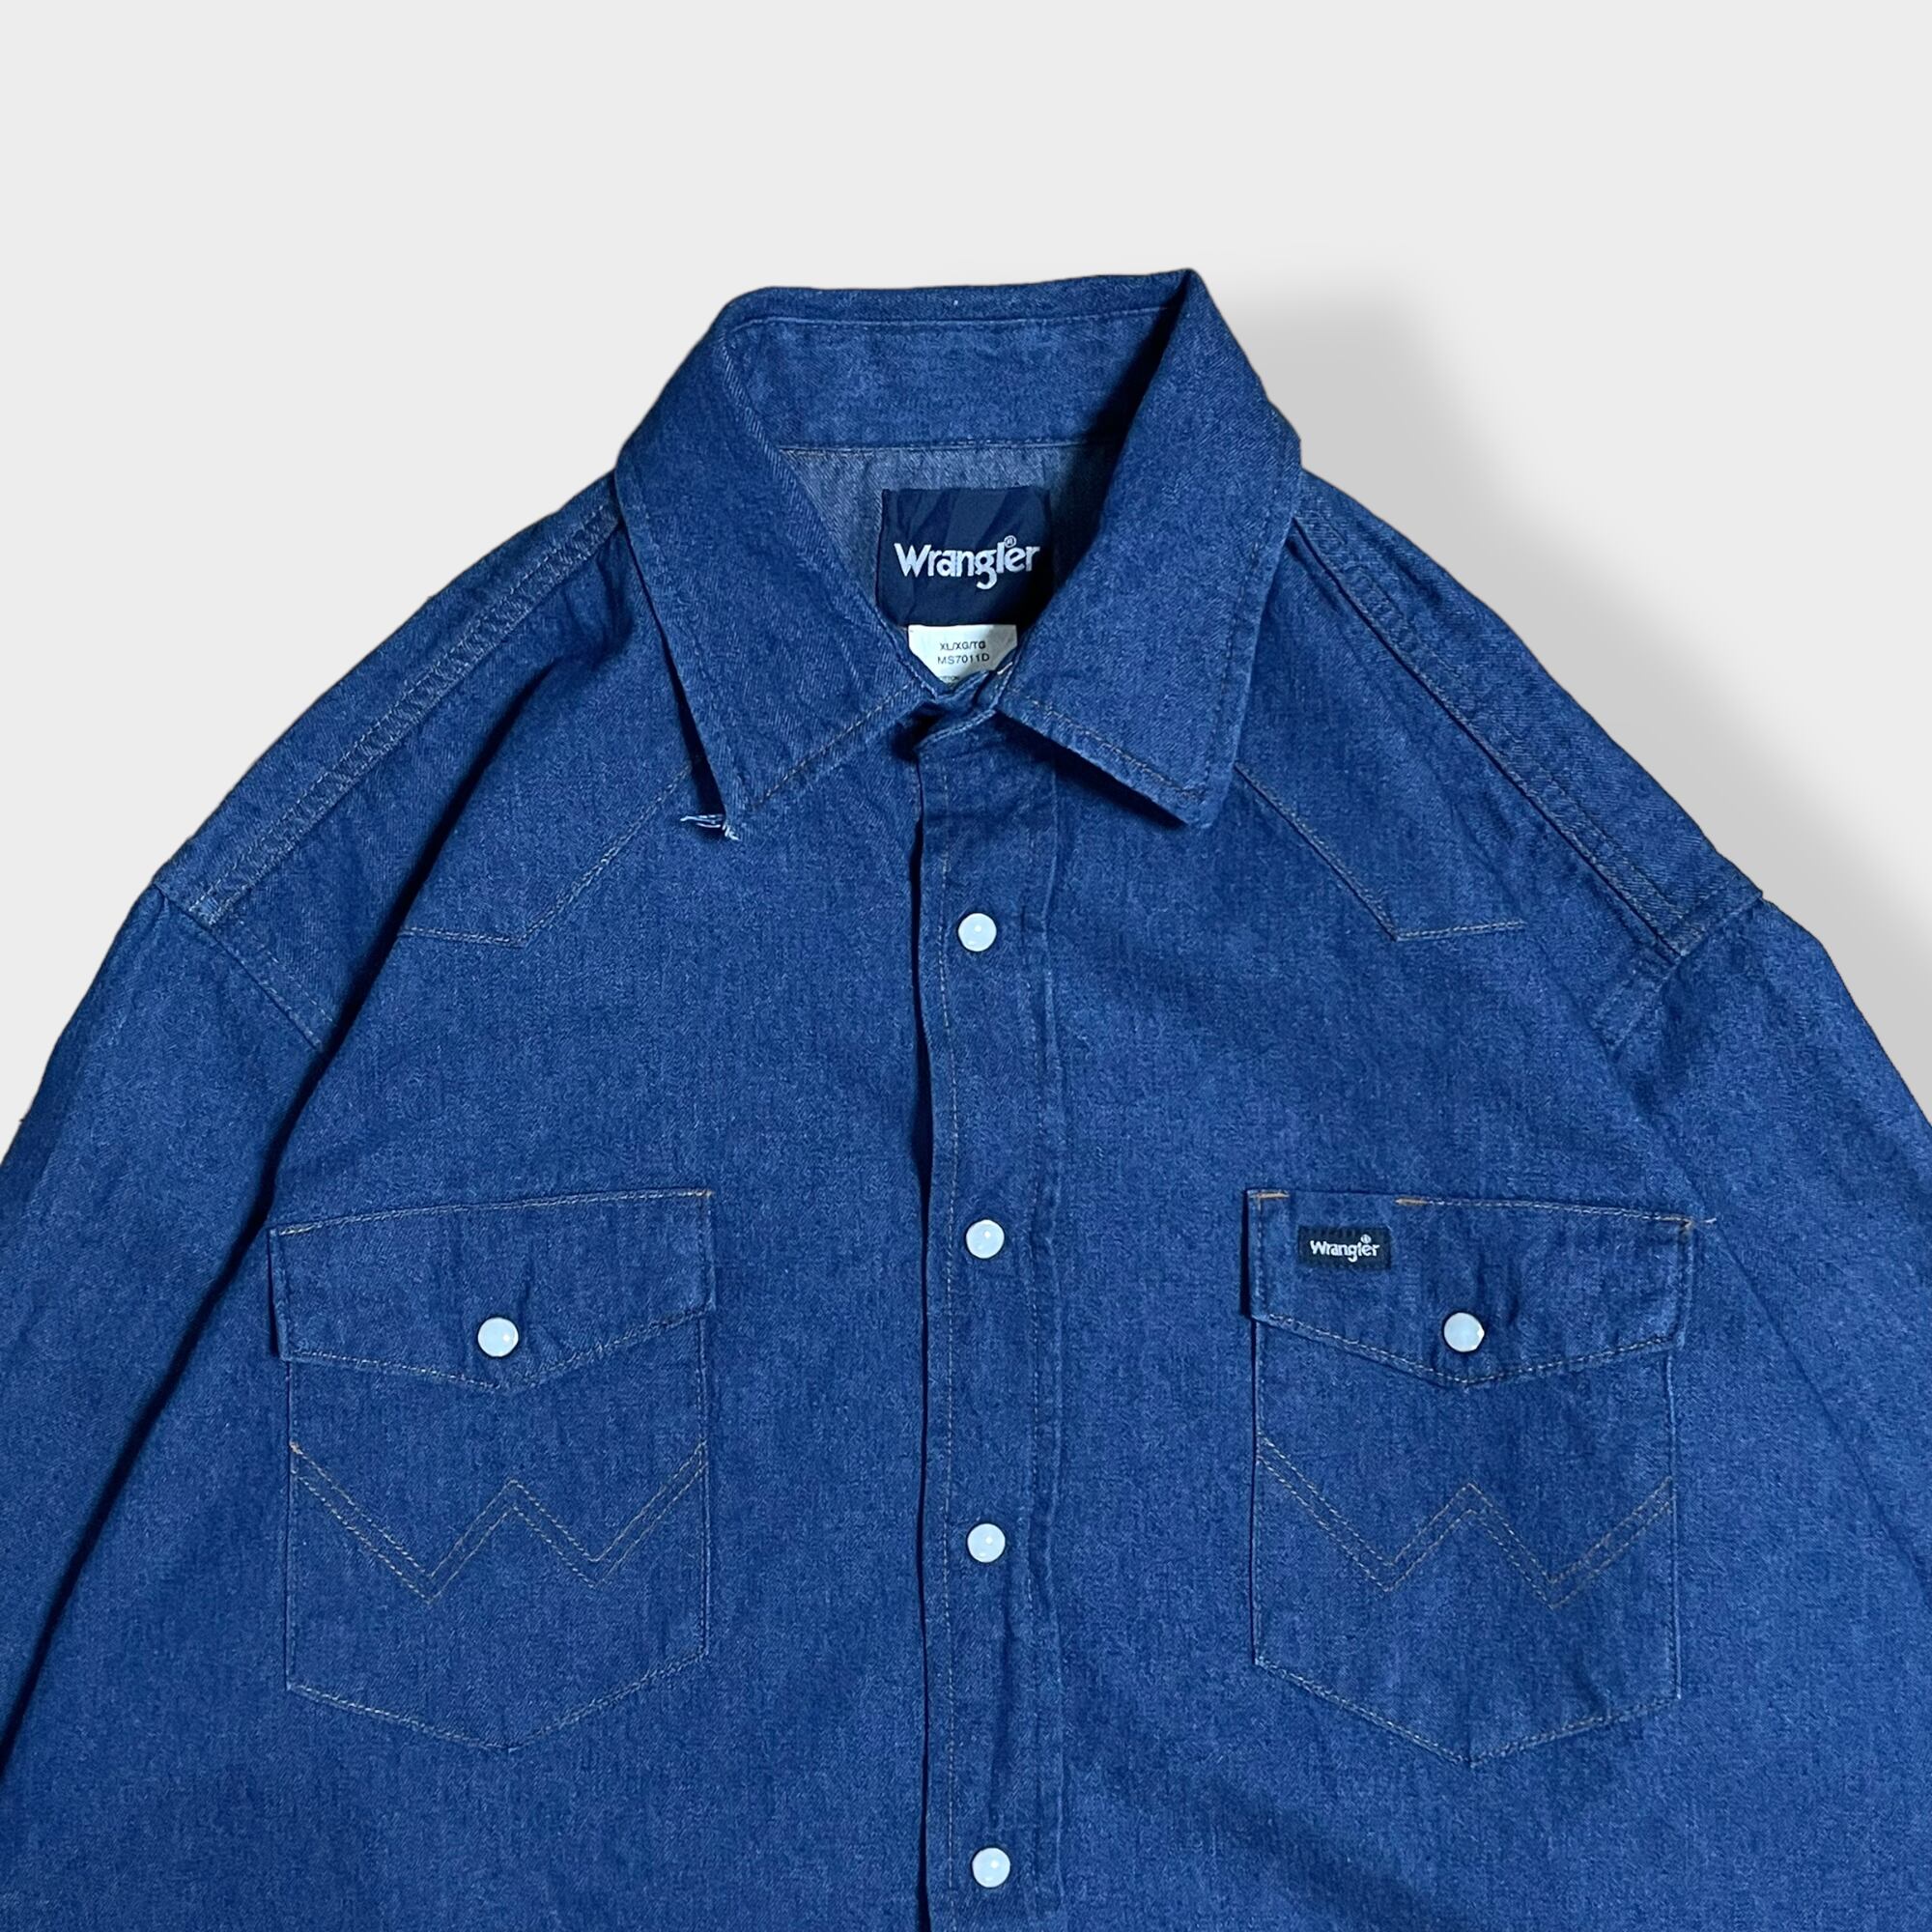 ラングラー チェックシャツ 半袖シャツ ロゴ グリーン 3XL US グレー